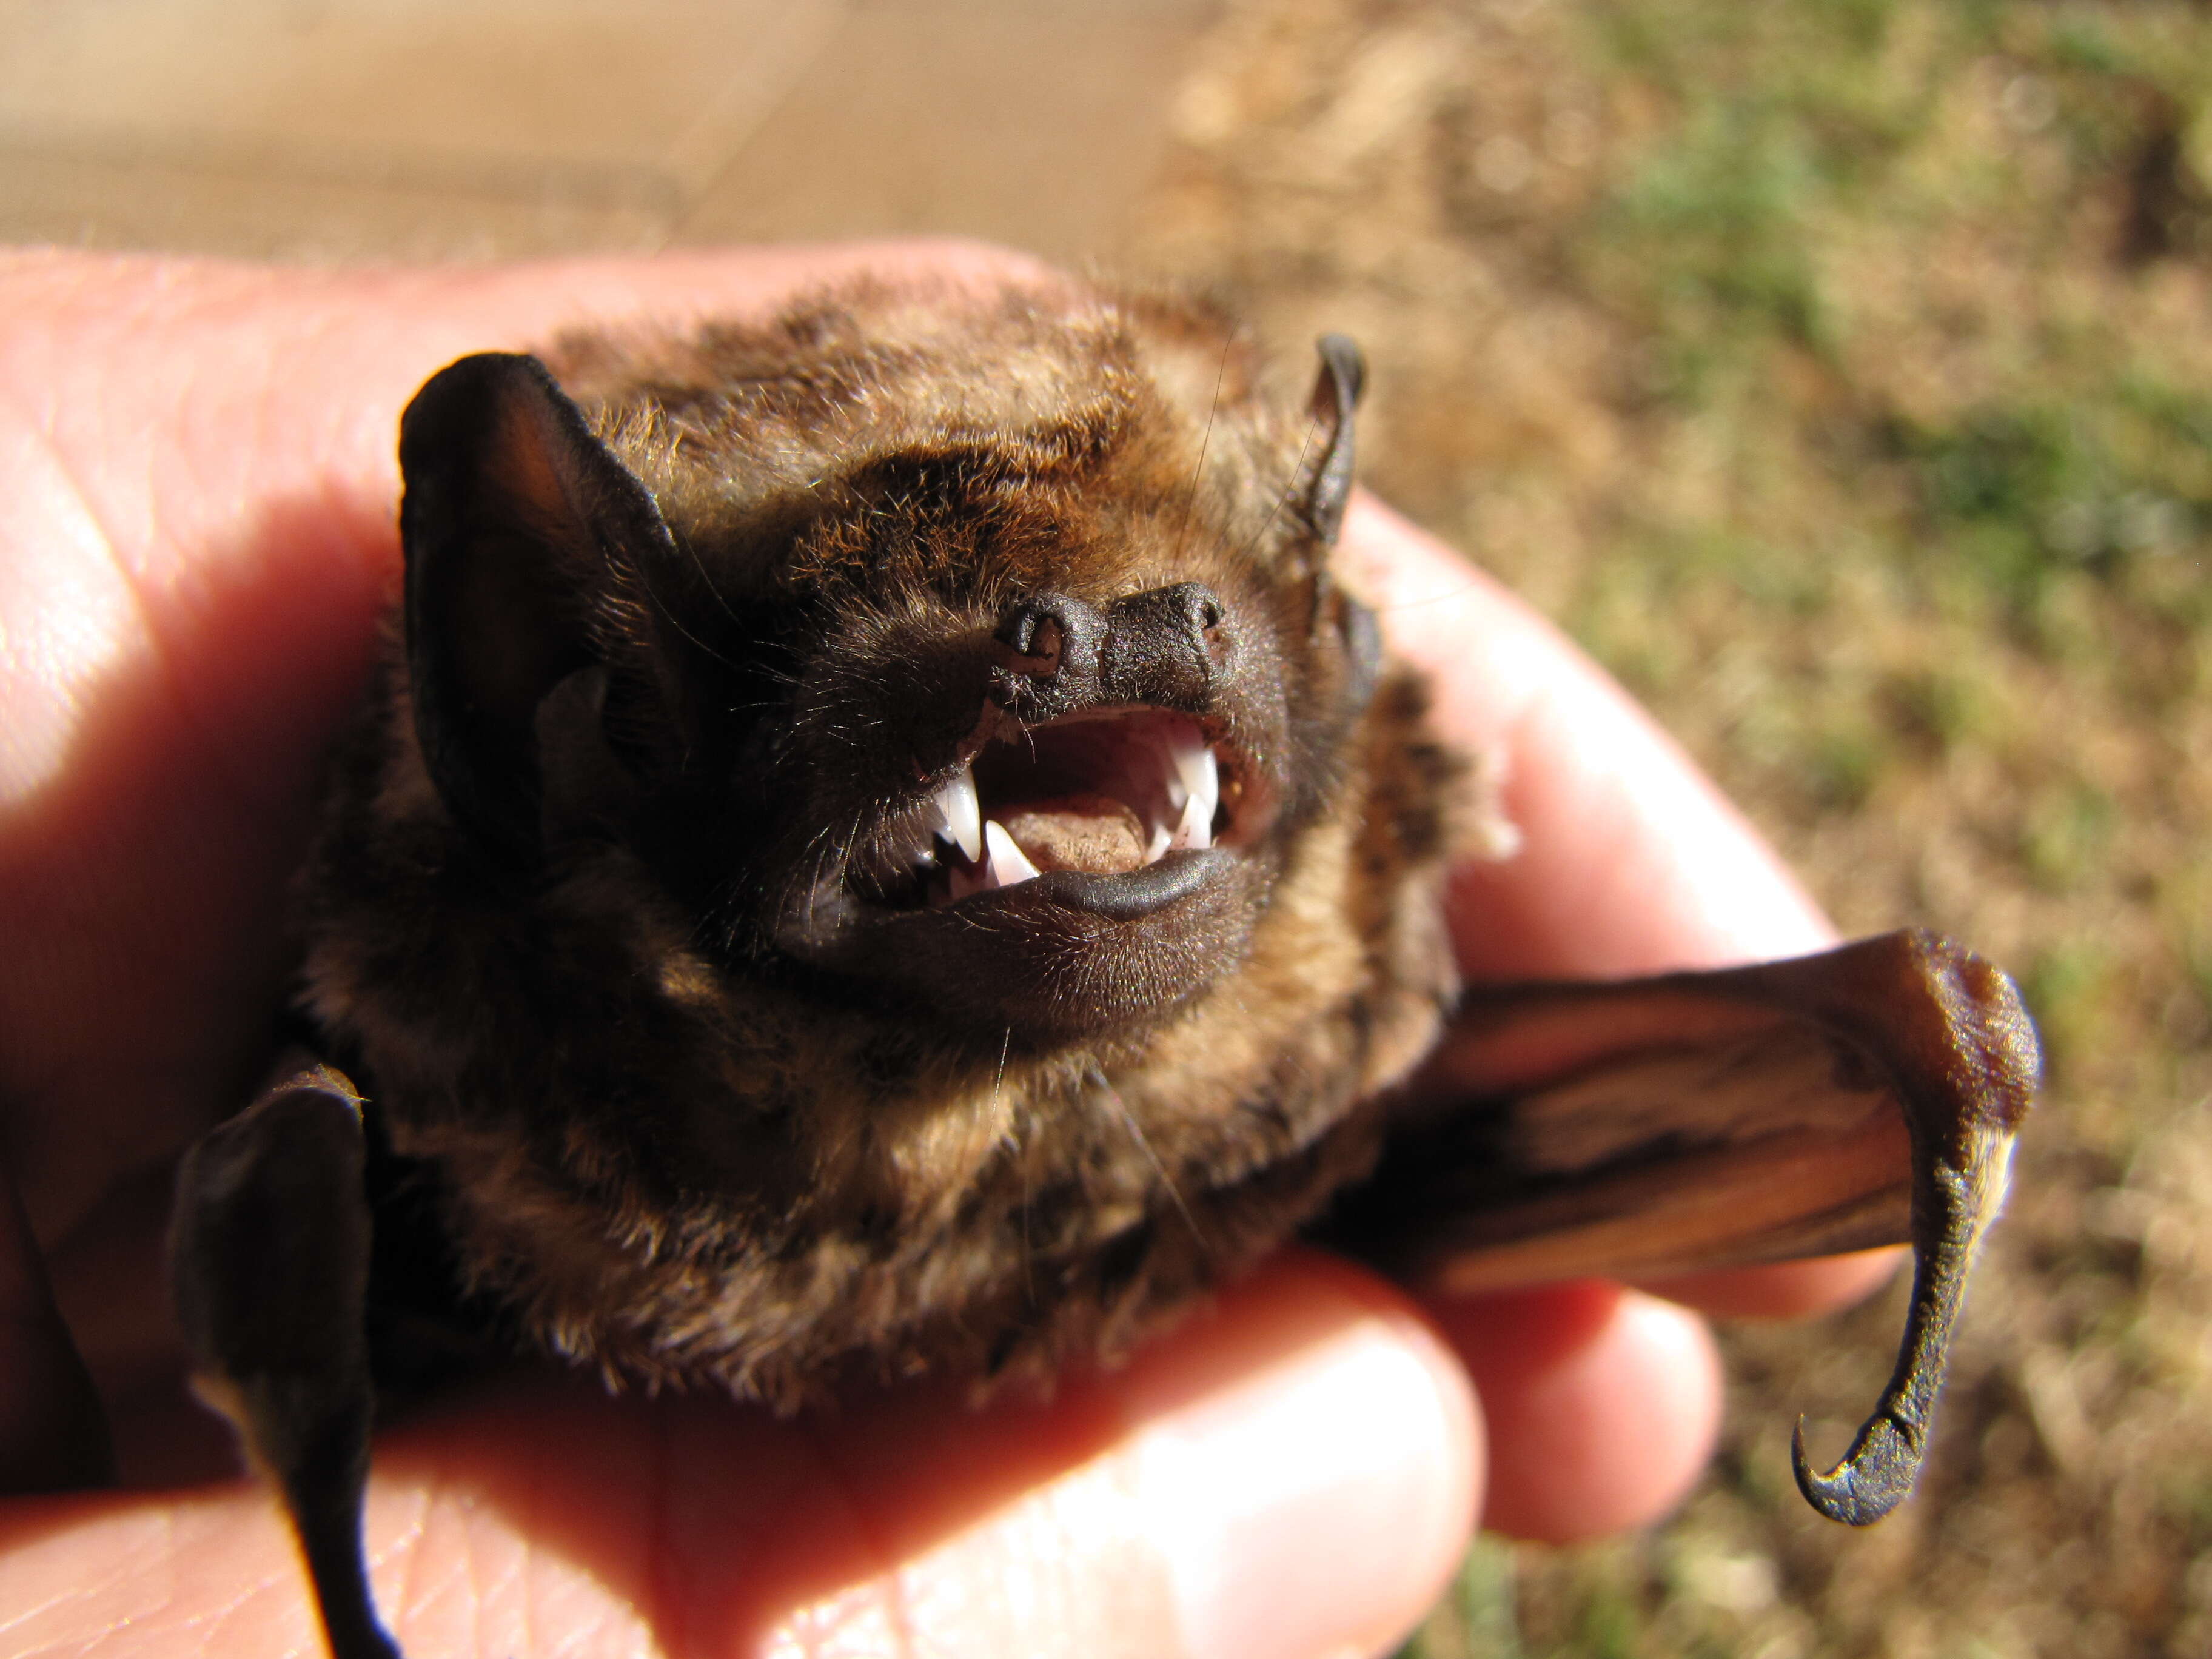 Image of Hawaiian Hoary Bat